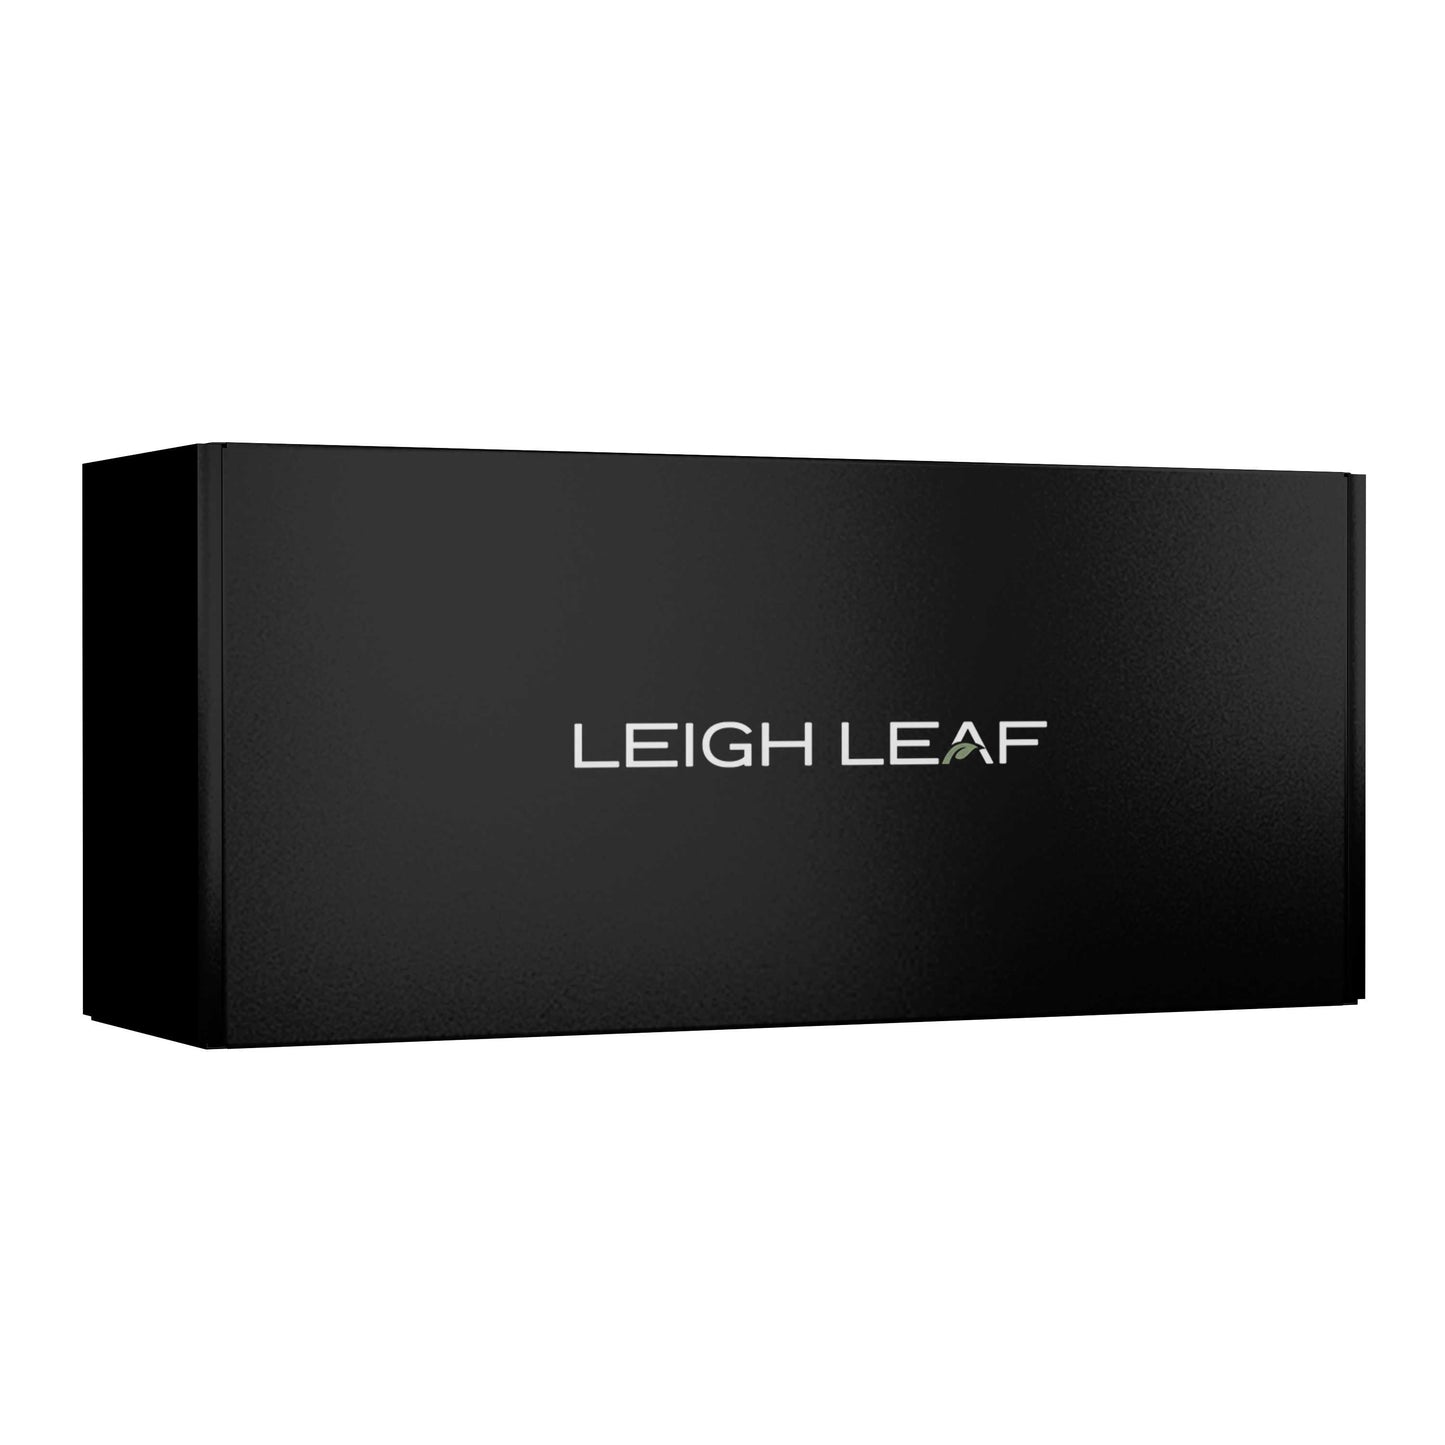 Leigh Leaf - Organic Matcha Gift Box pack